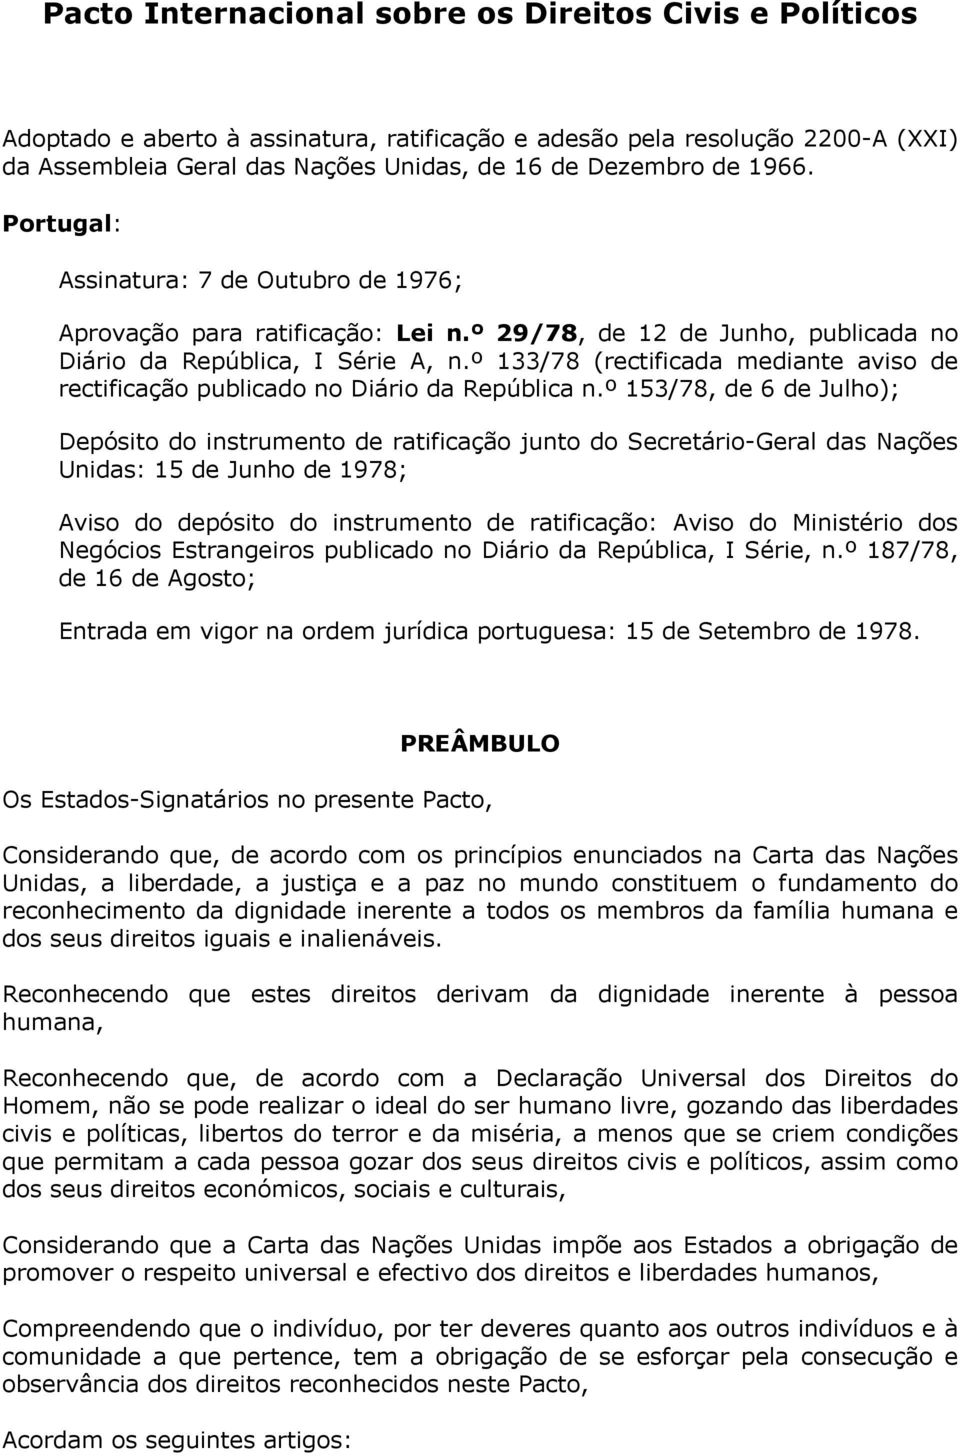 º 133/78 (rectificada mediante aviso de rectificação publicado no Diário da República n.